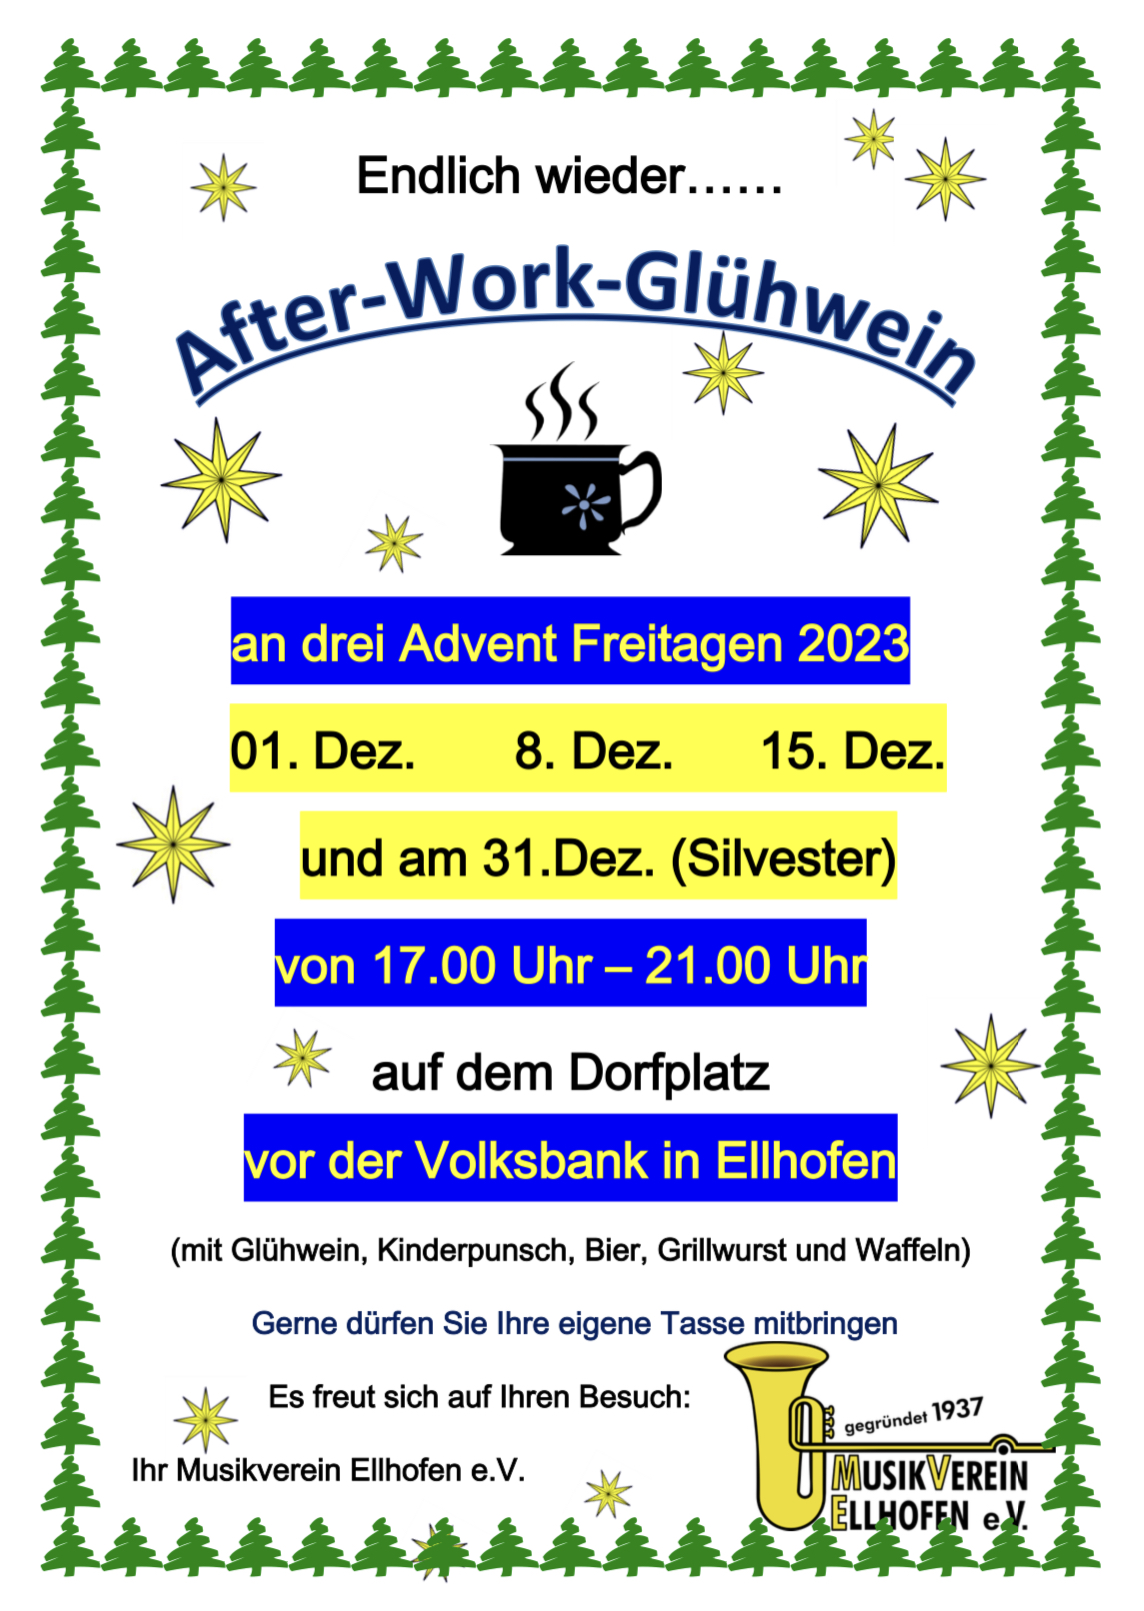 After-Work-Glühwein Event